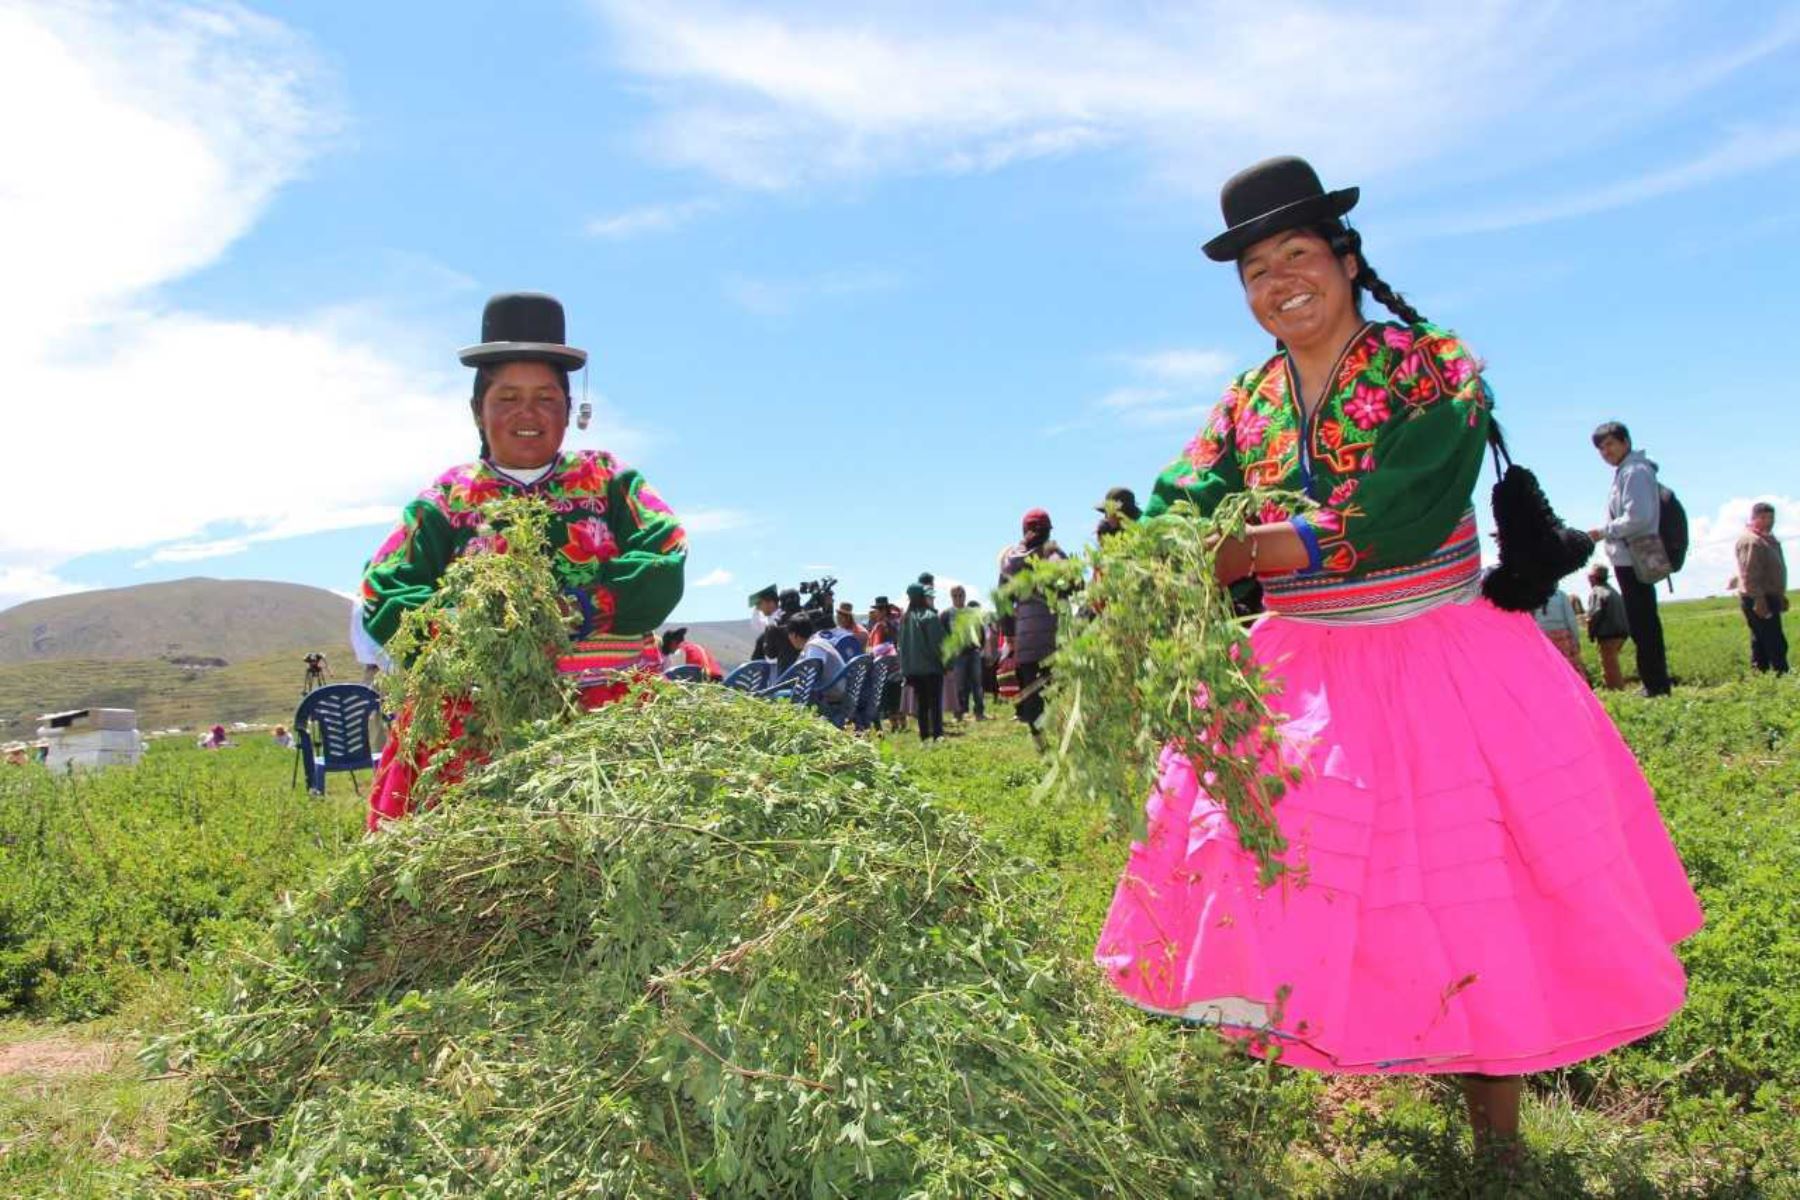 En el marco del Plan Nacional de Desarrollo Ganadero, el Ministerio de Agricultura y Riego (Minagri), anunció que este año en la región Puno se instalarán más de 25,000 hectáreas de pastos cultivados, casi el doble de hectáreas atendidas el año anterior.